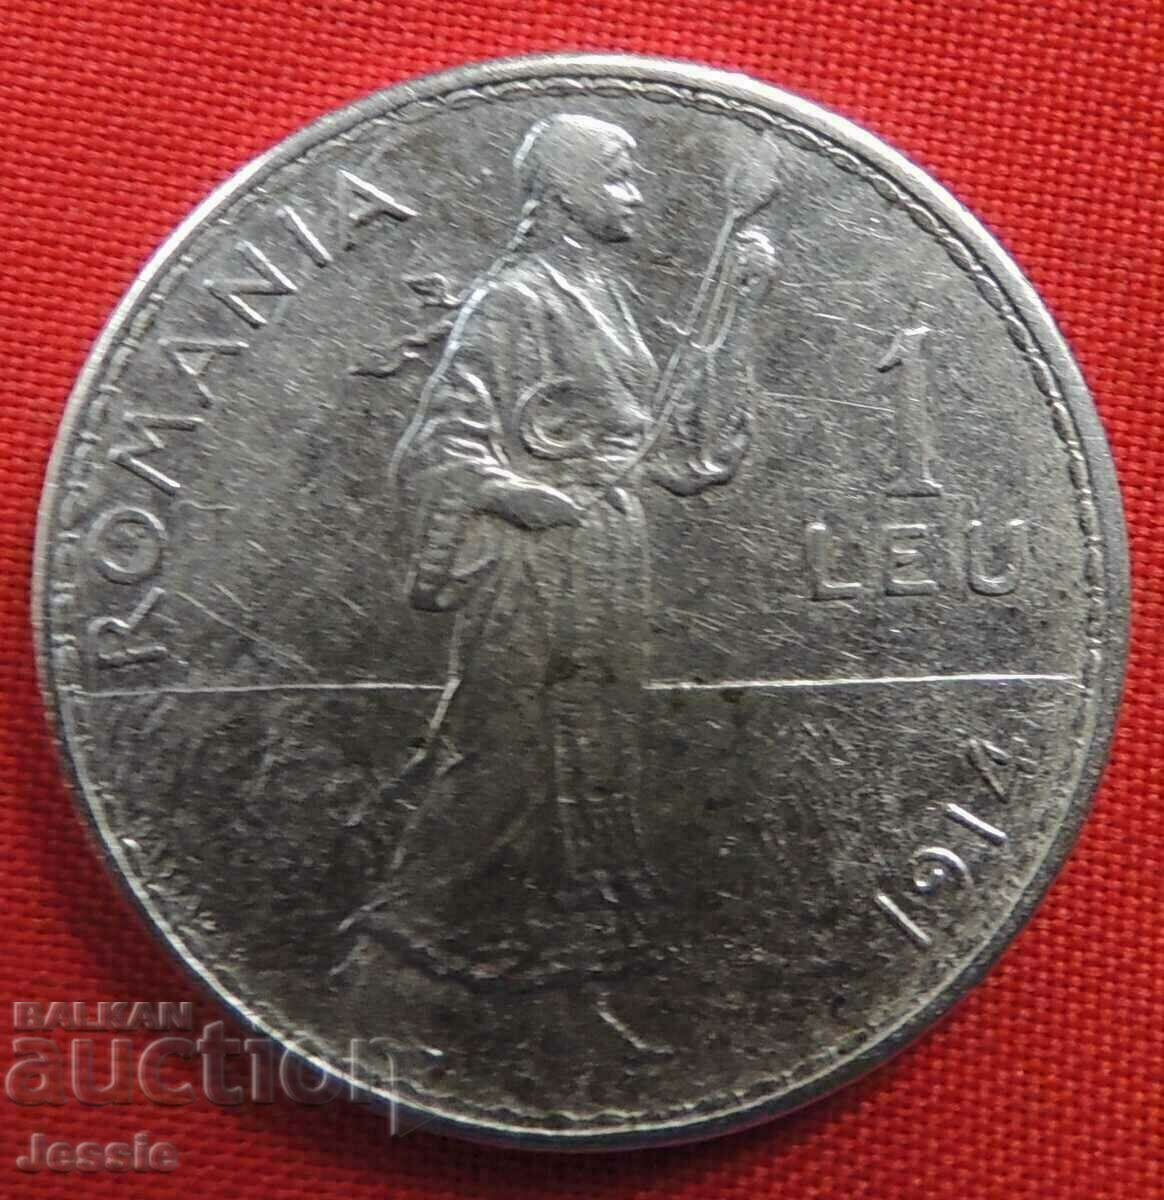 1 leu argint 1914 - Romania